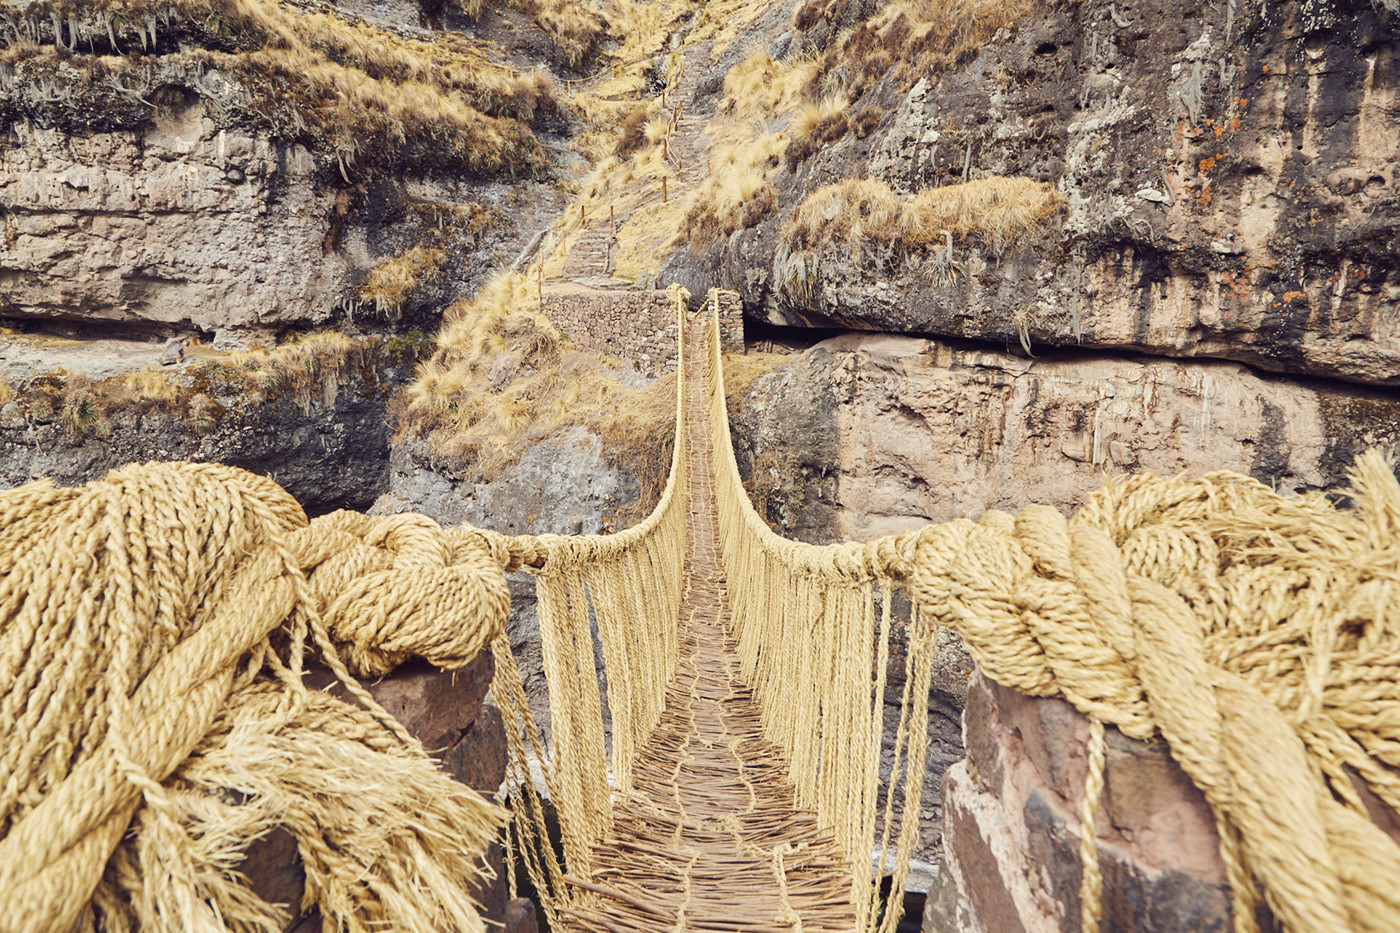 Die geflochtene Grasbrücke in Peru, beeindruckend, wenn man direkt vor ihr steht